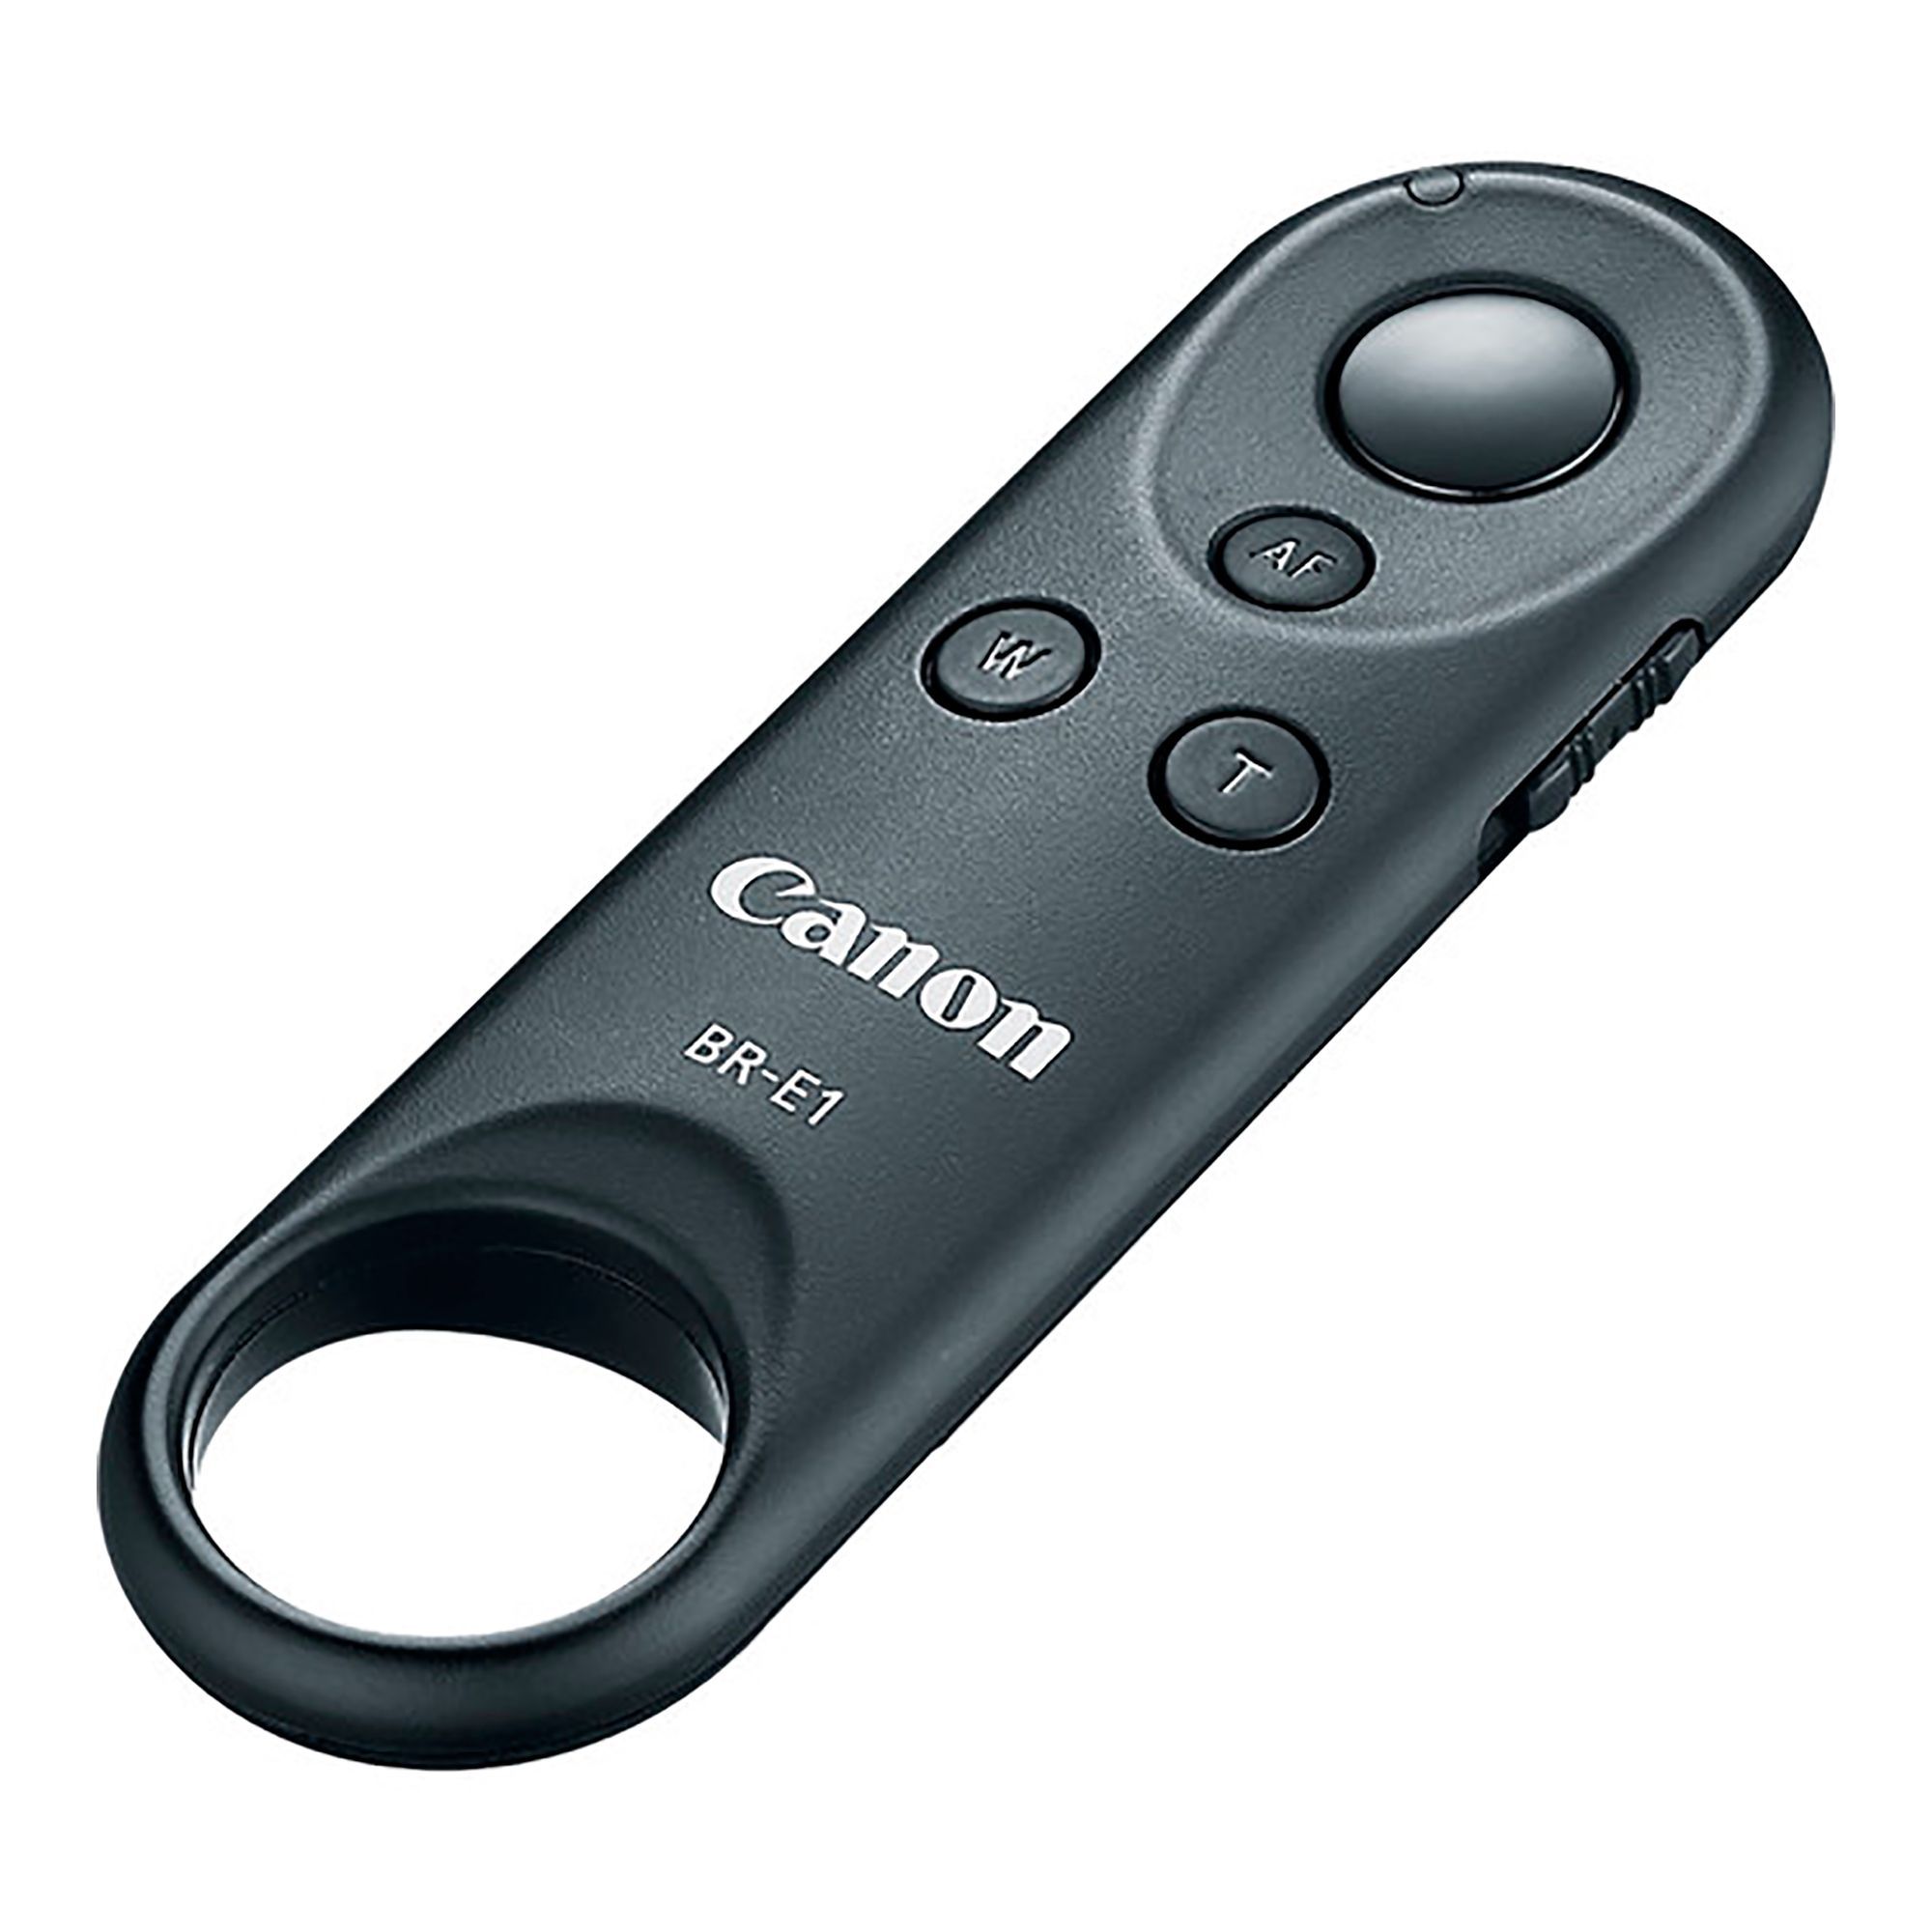 Control Remoto Canon Br E1 - Smart Sale